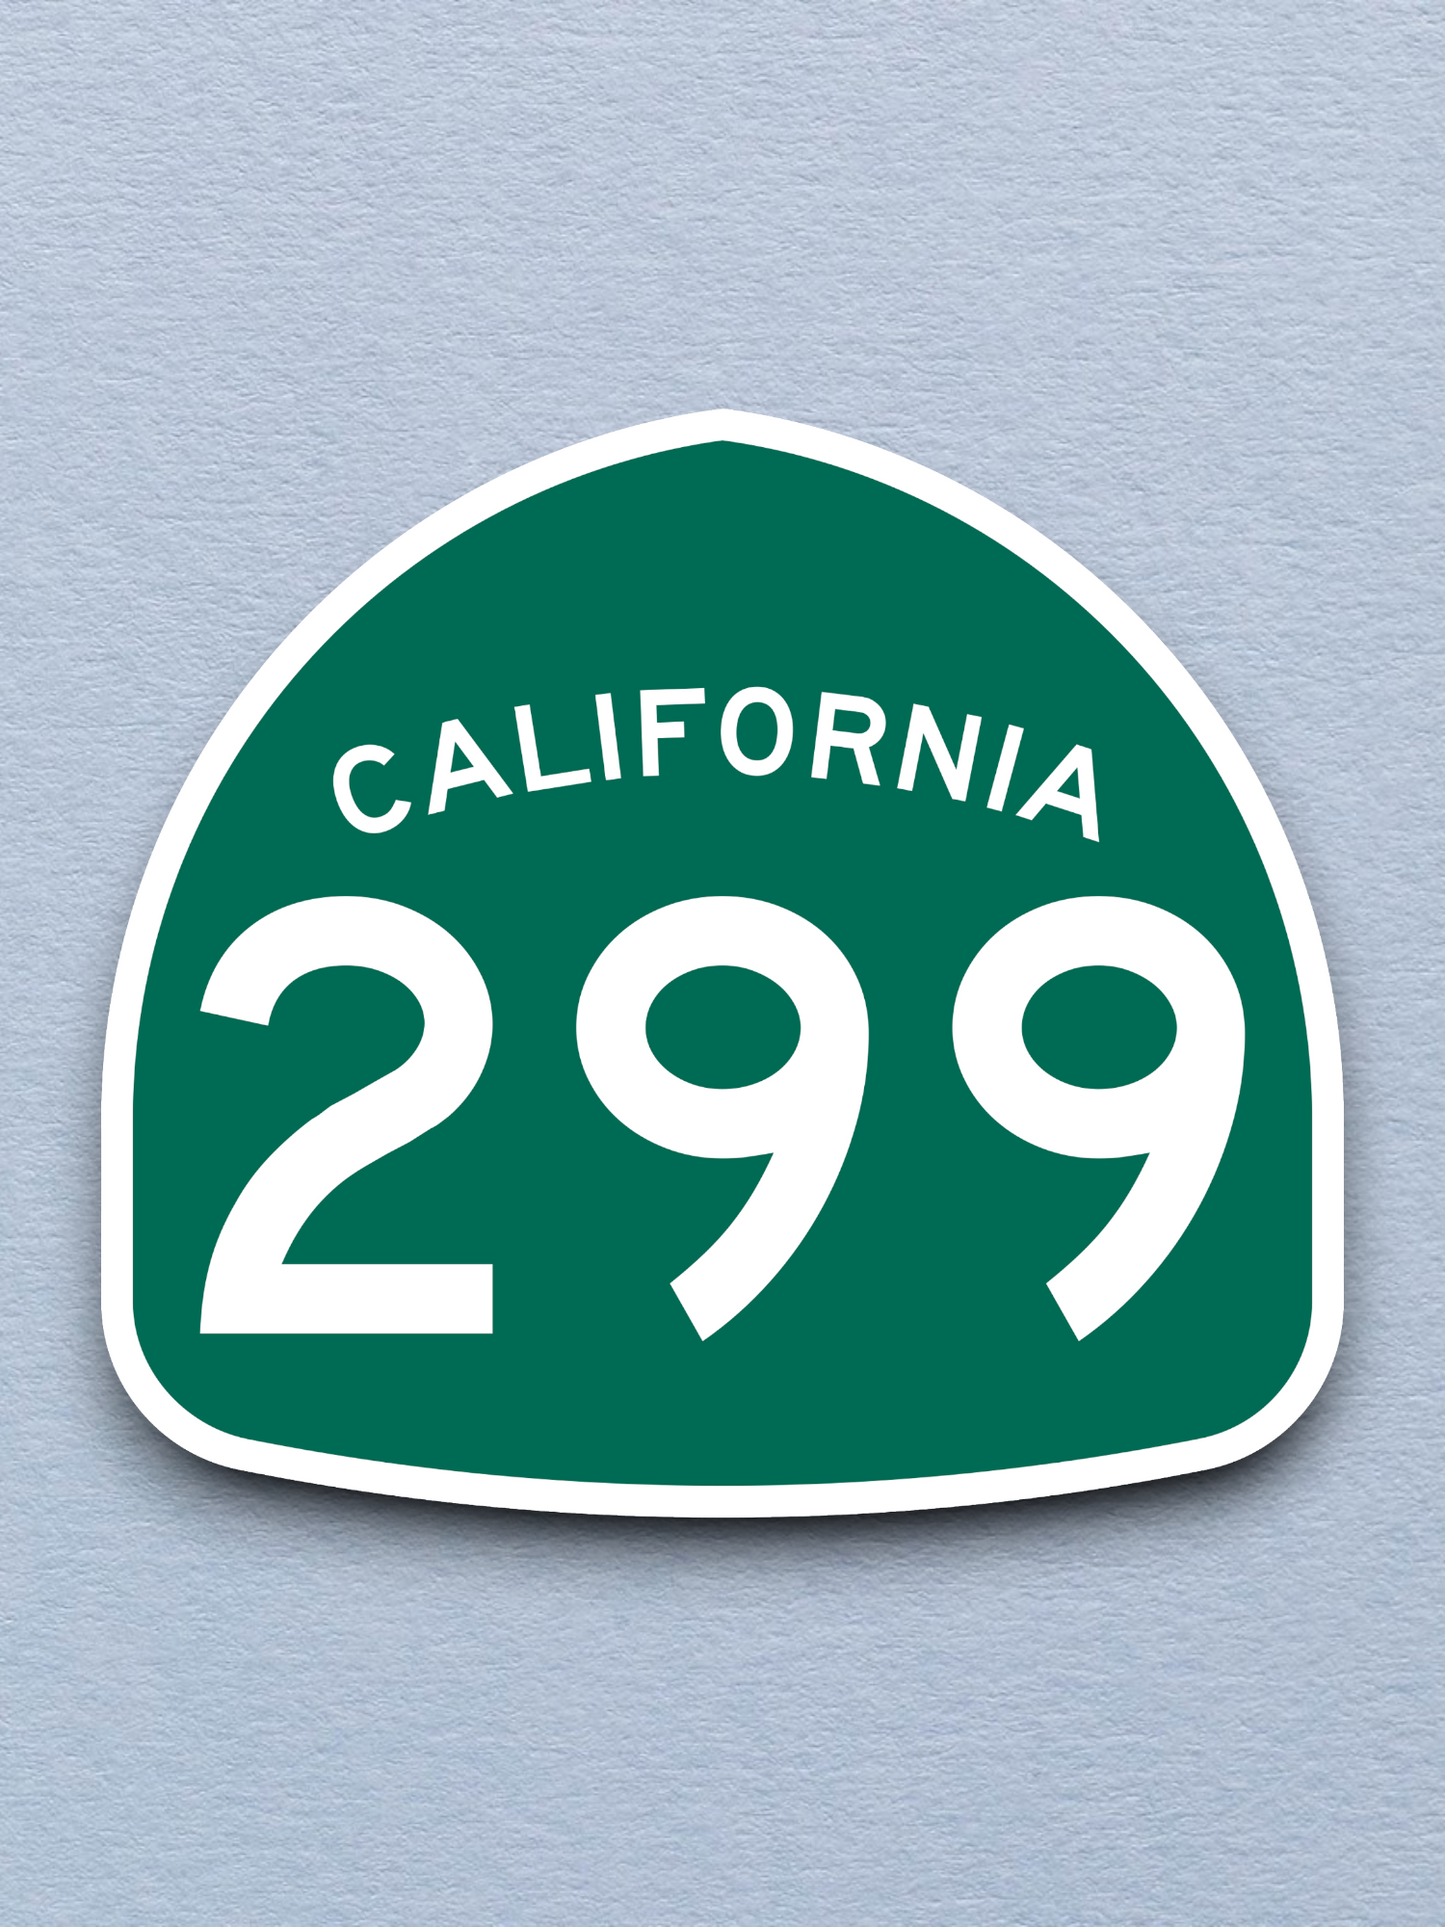 California State Route 299 Sticker